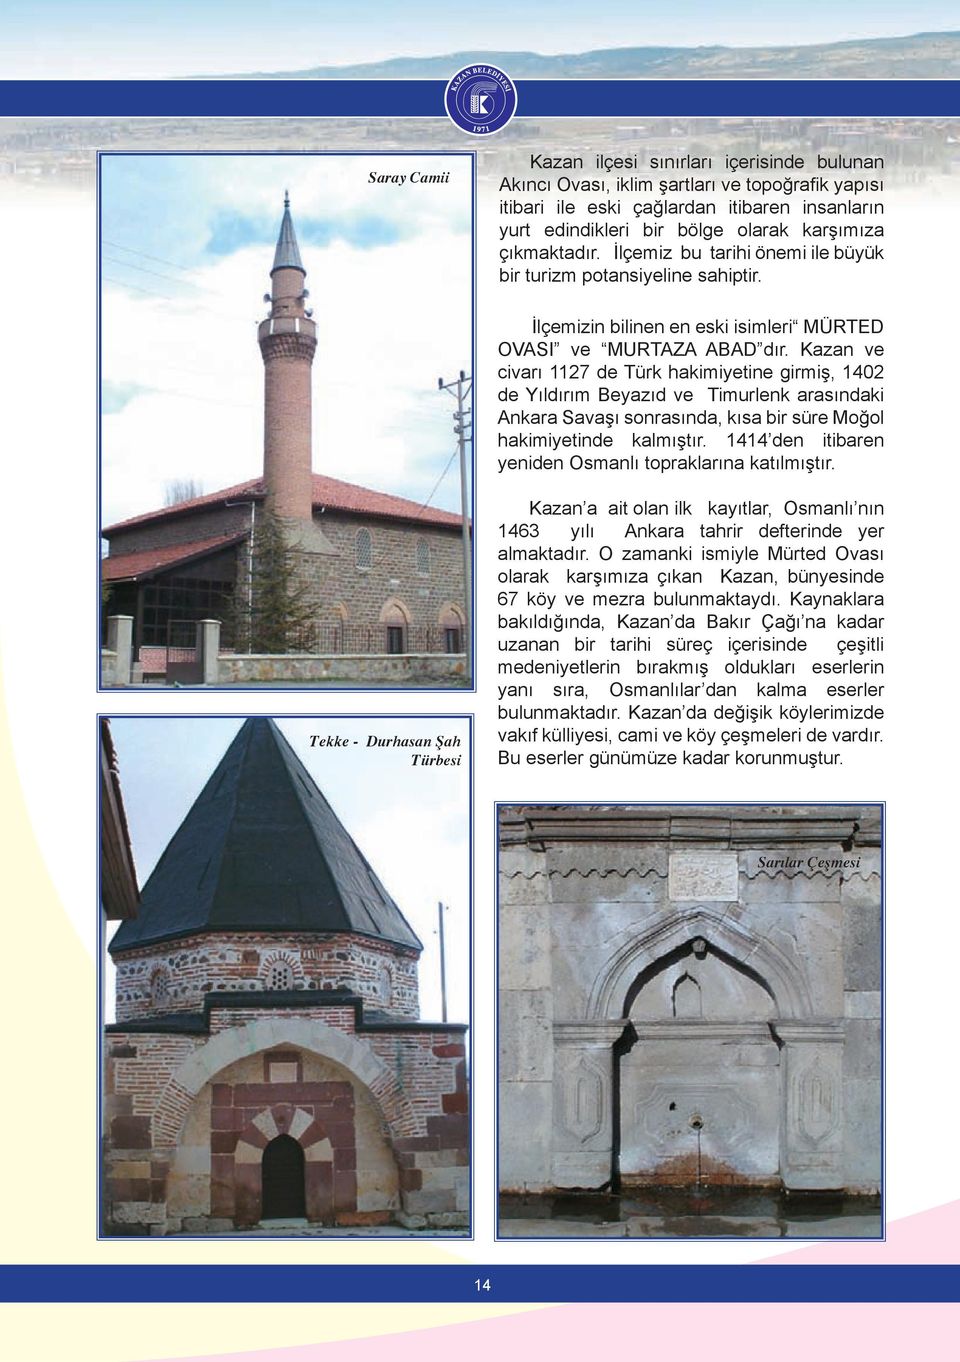 Kazan ve civarı 1127 de Türk hakimiyetine girmiş, 1402 de Yıldırım Beyazıd ve Timurlenk arasındaki Ankara Savaşı sonrasında, kısa bir süre Moğol hakimiyetinde kalmıştır.